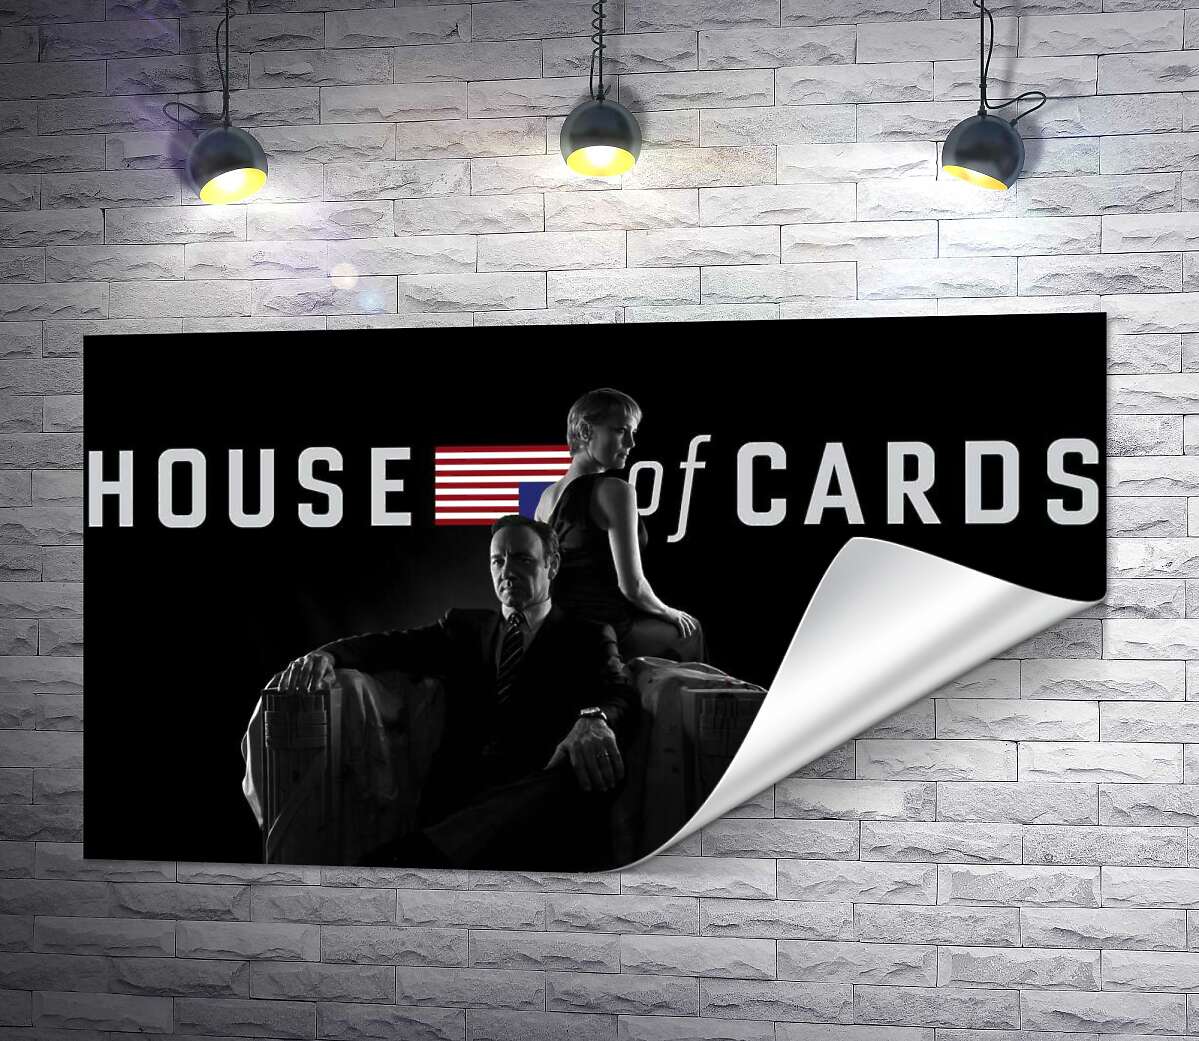 друк Головні герої - подружжя, на постері до серіалу "Картковий будинок" (House of cards)